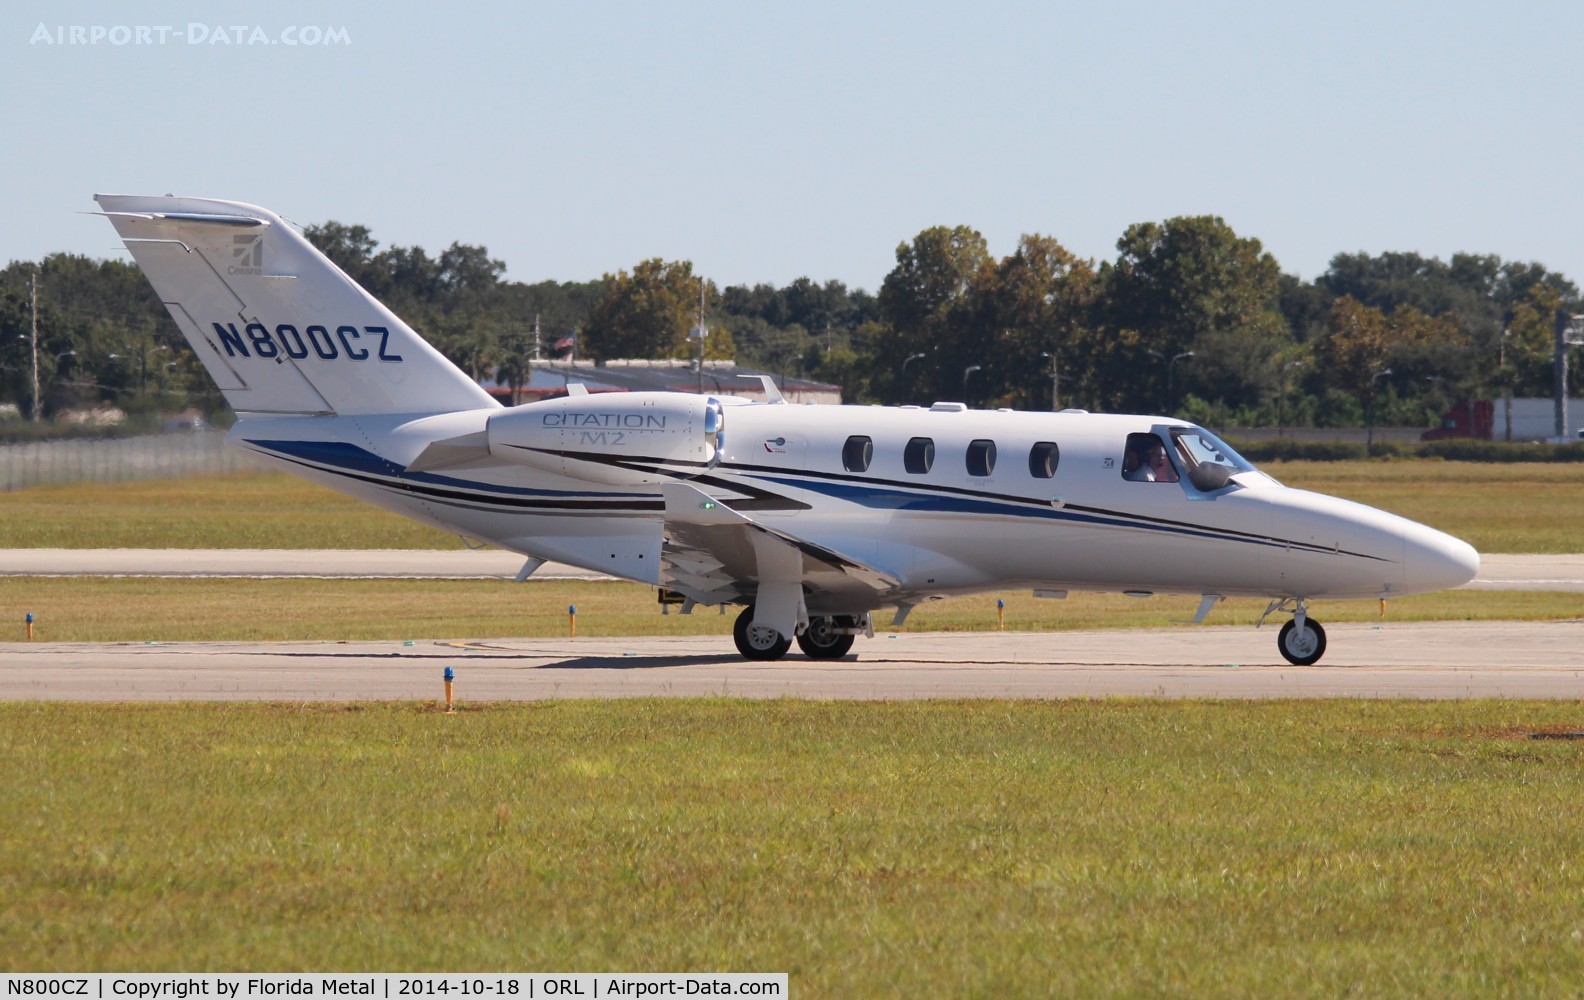 N800CZ, 2014 Cessna 525 Citation M2 C/N 525-0800, Citation M2